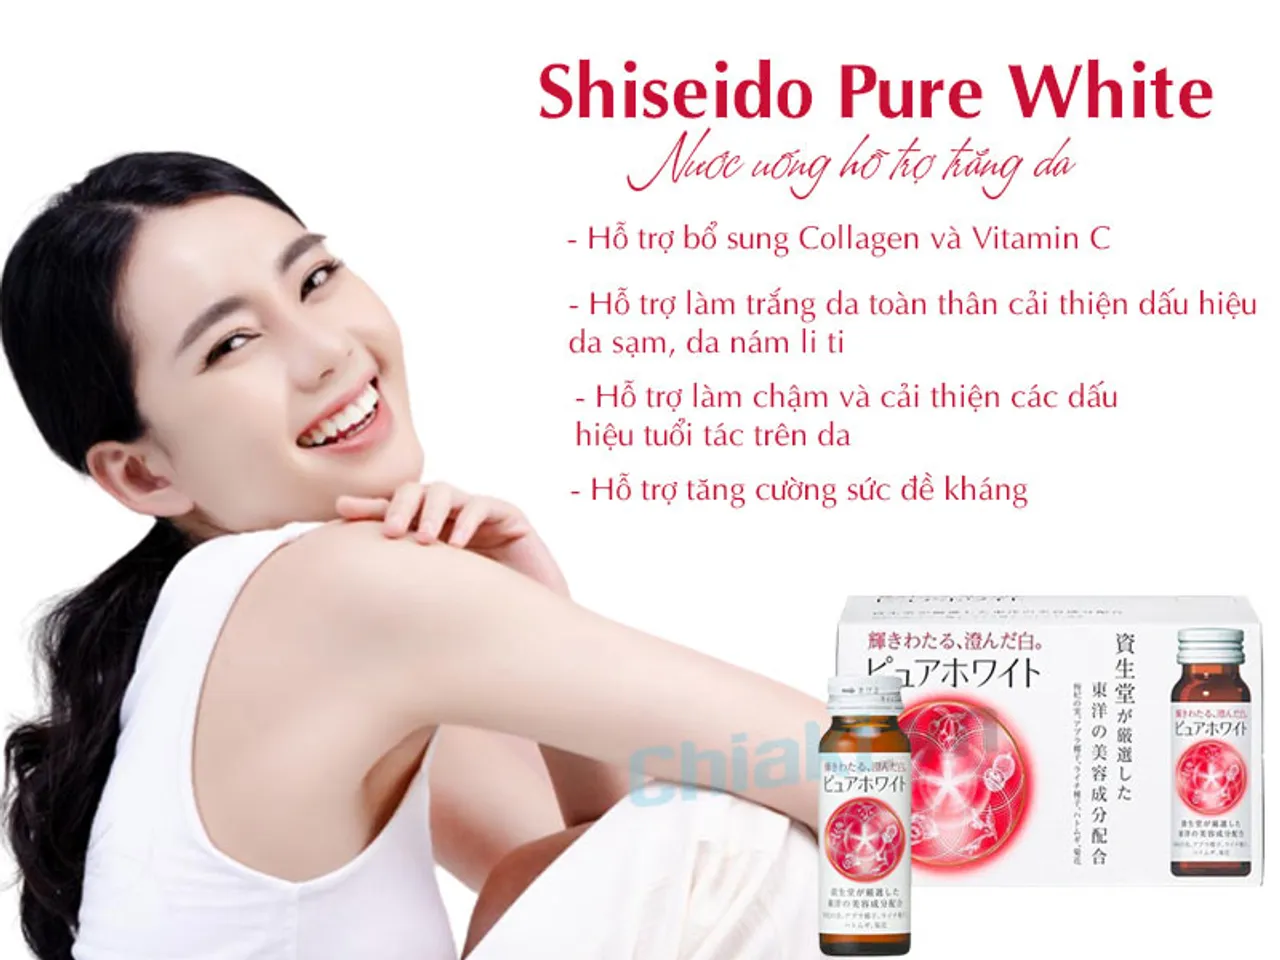 Công dụng của Shiseido Pure White